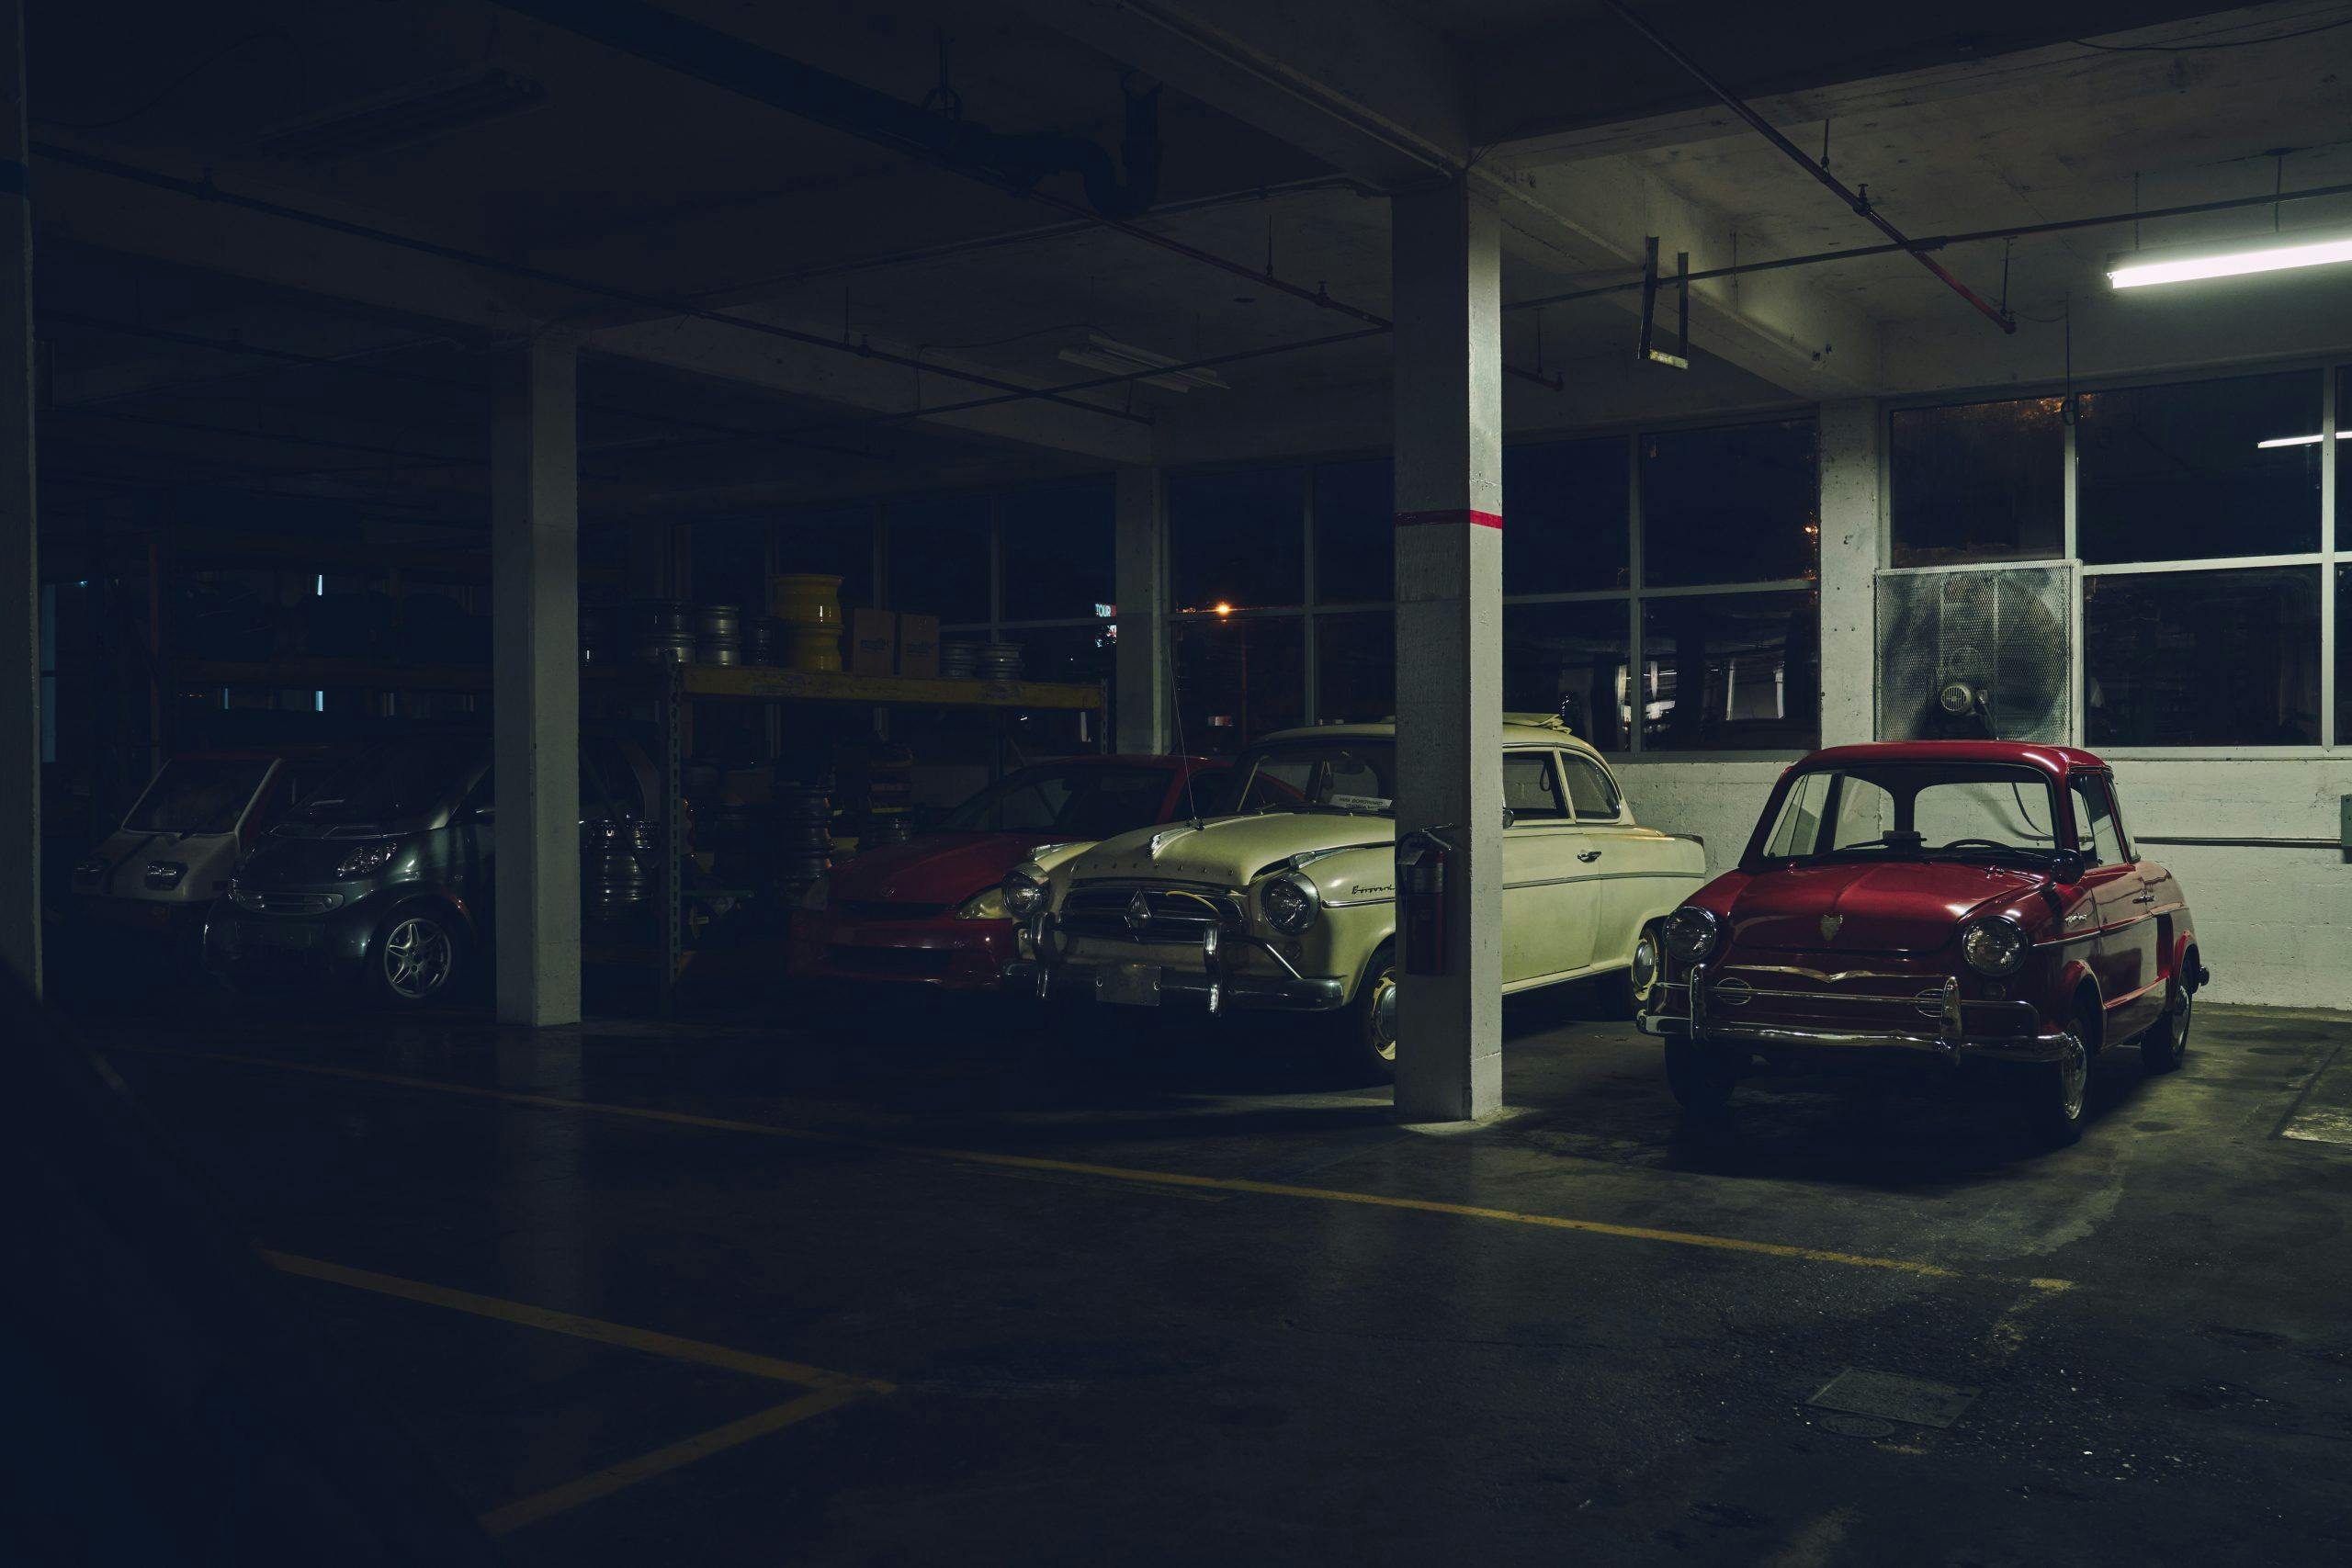 Nashville vintage car museum collection